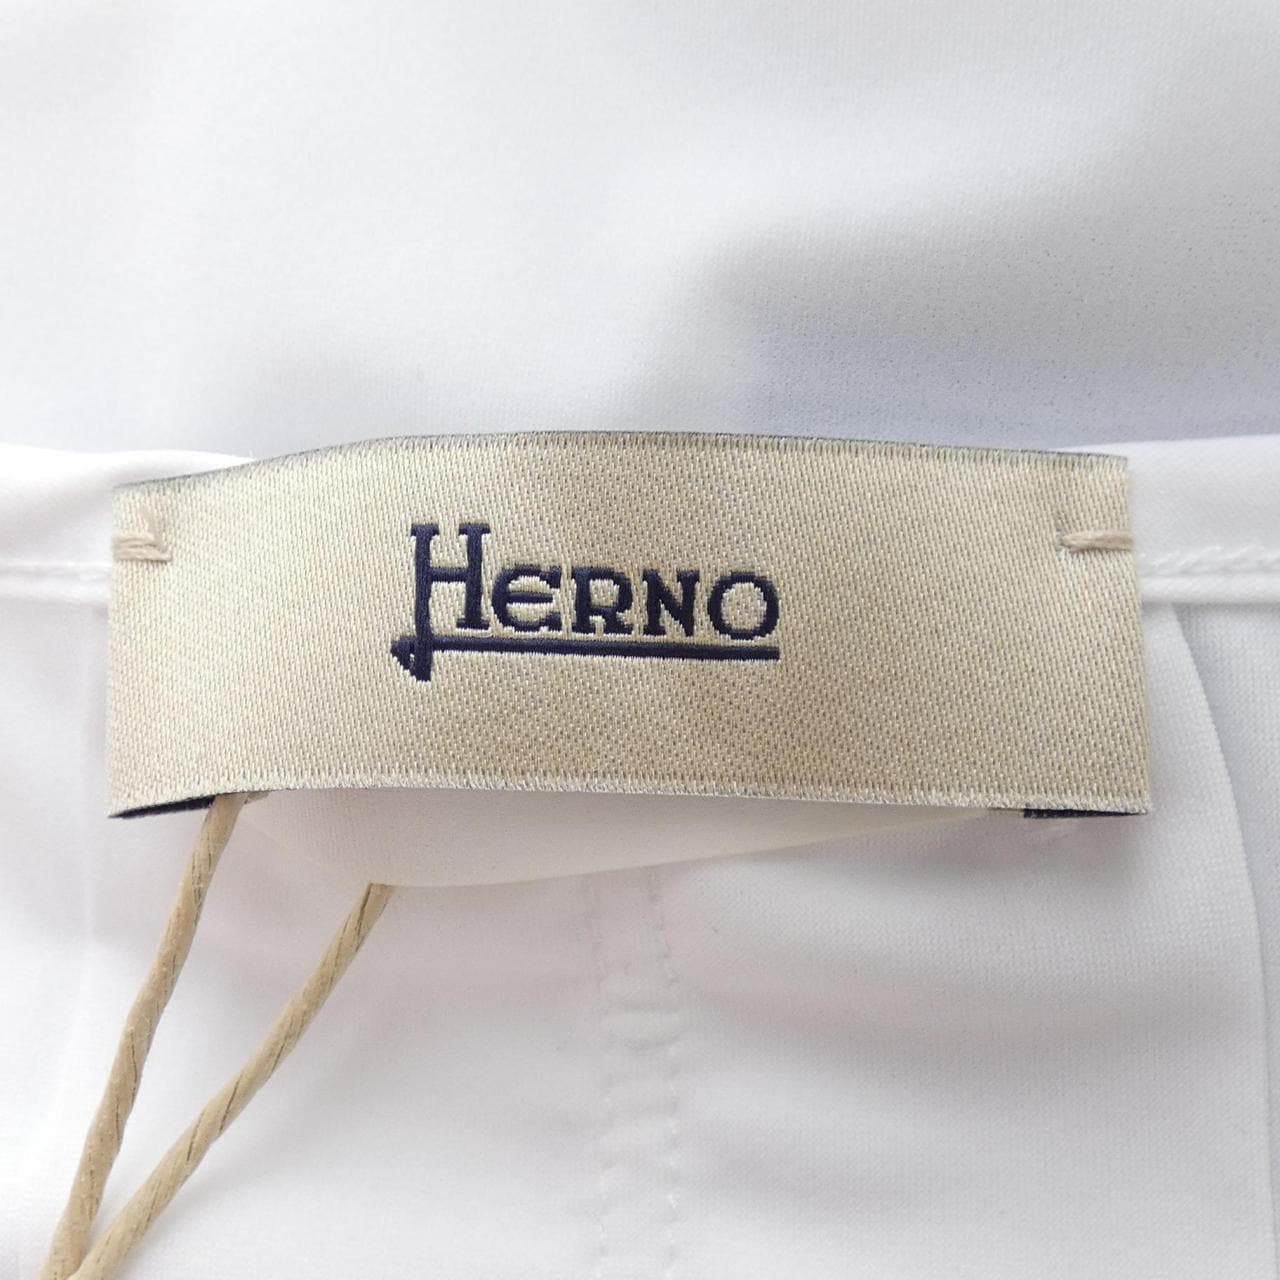 ヘルノ Herno トップス